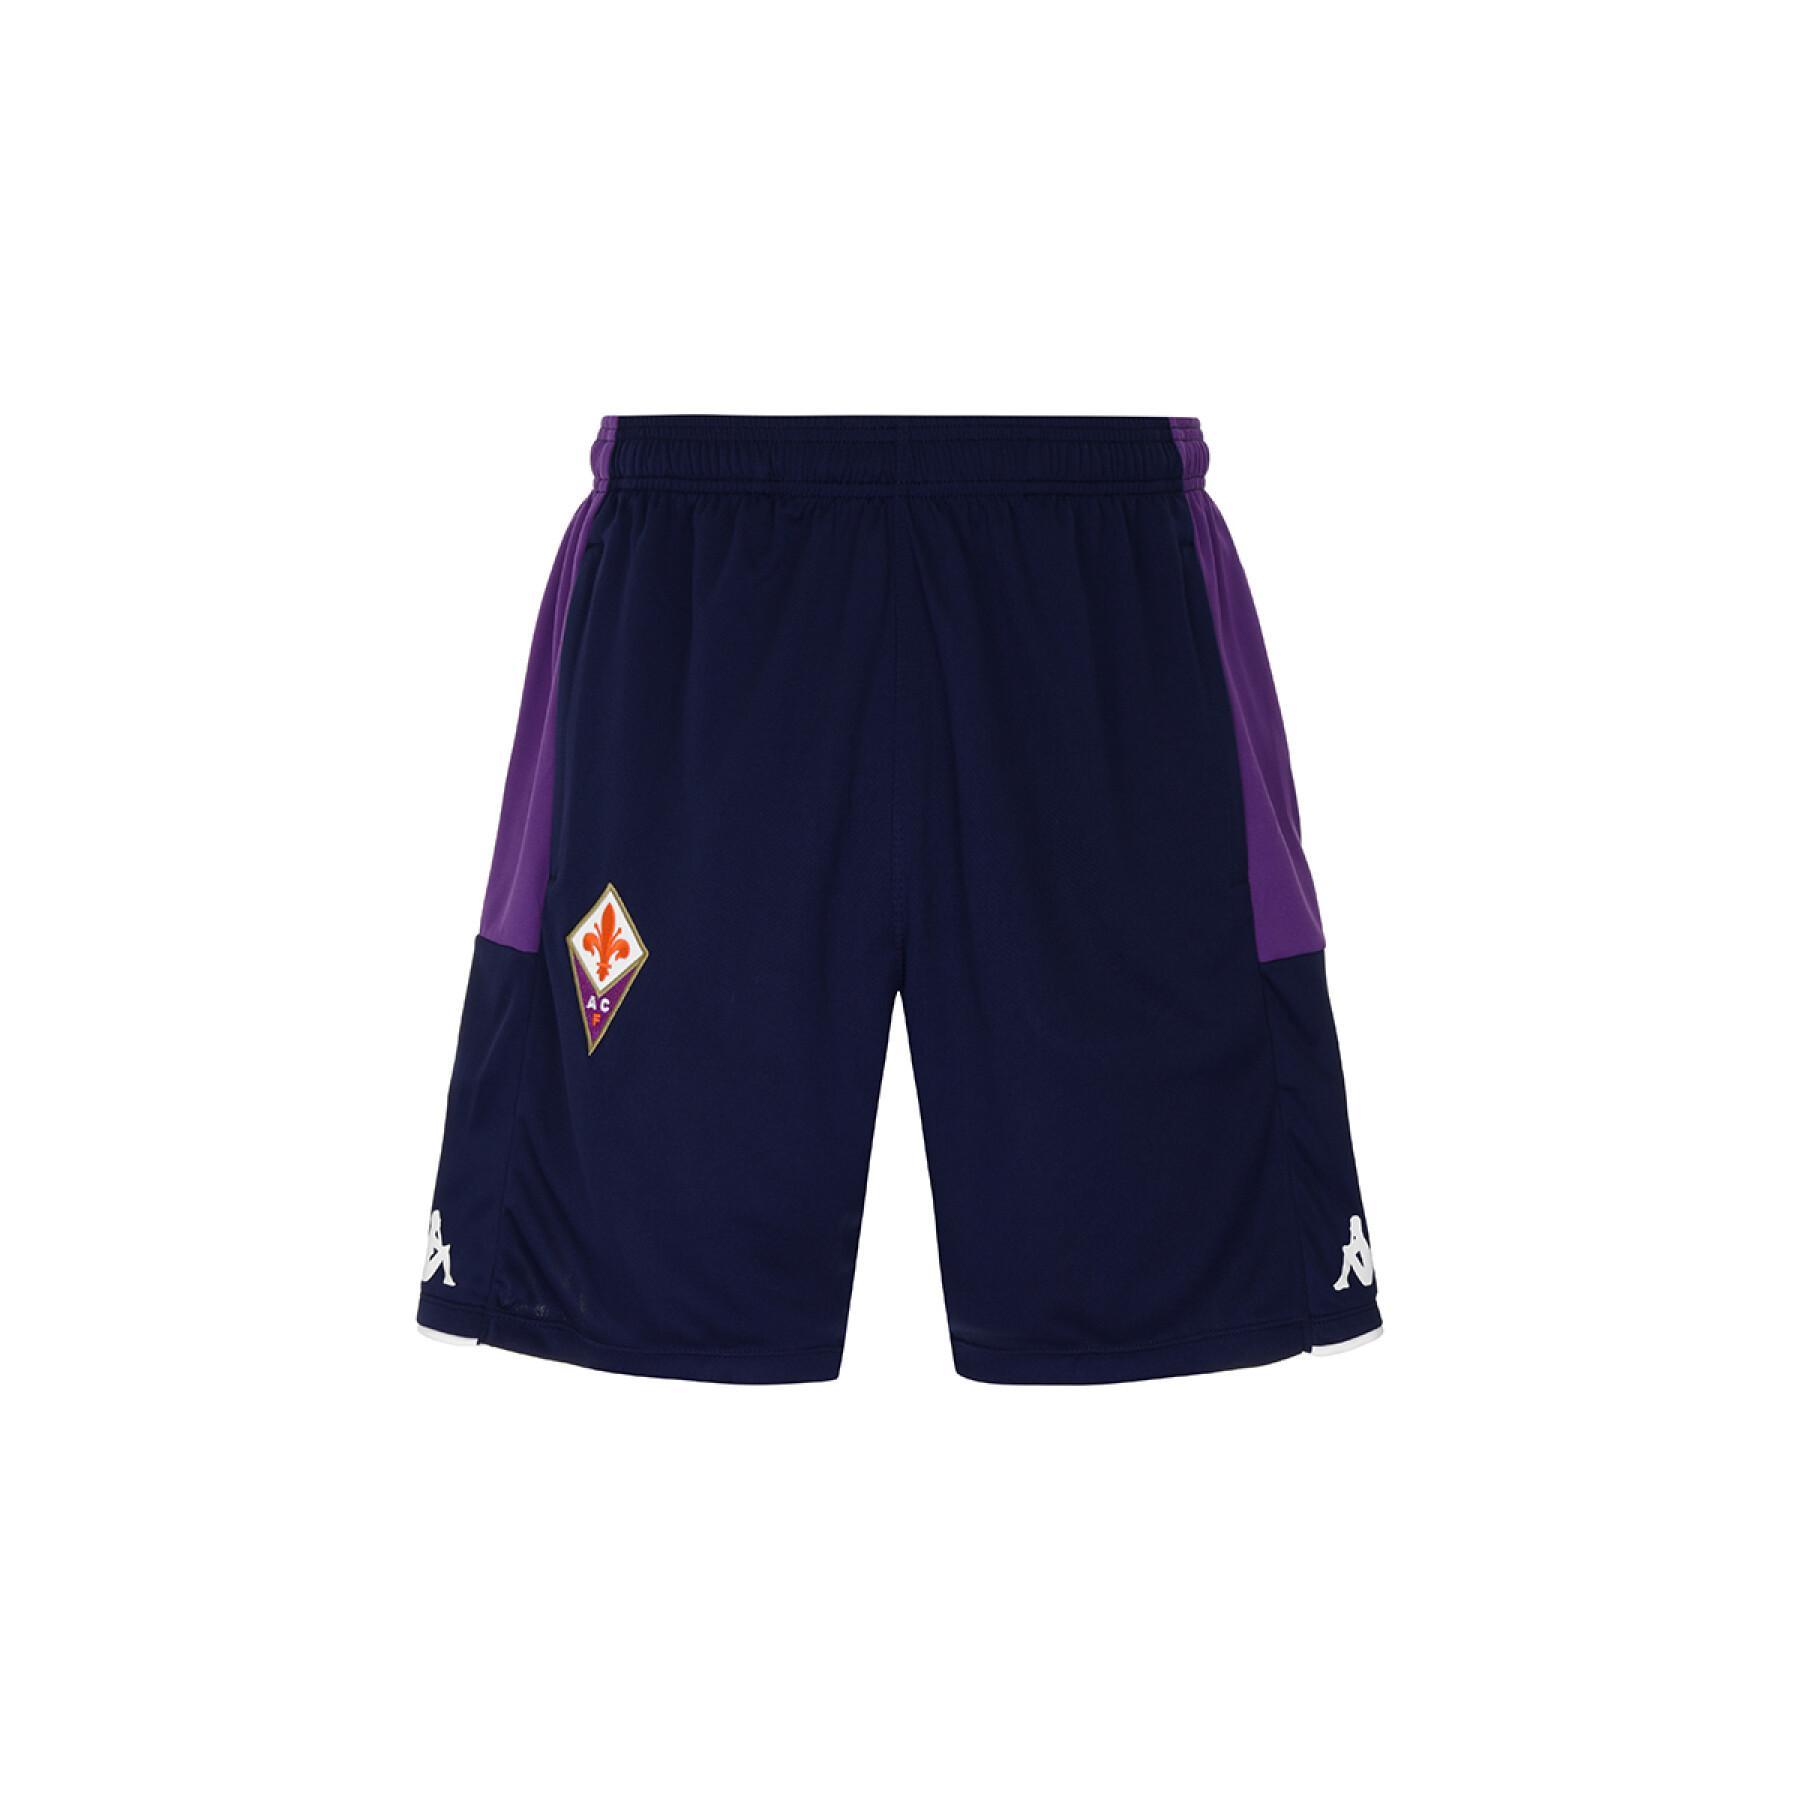 Kurz Fiorentina AC 2021/22 ahorazip pro 5